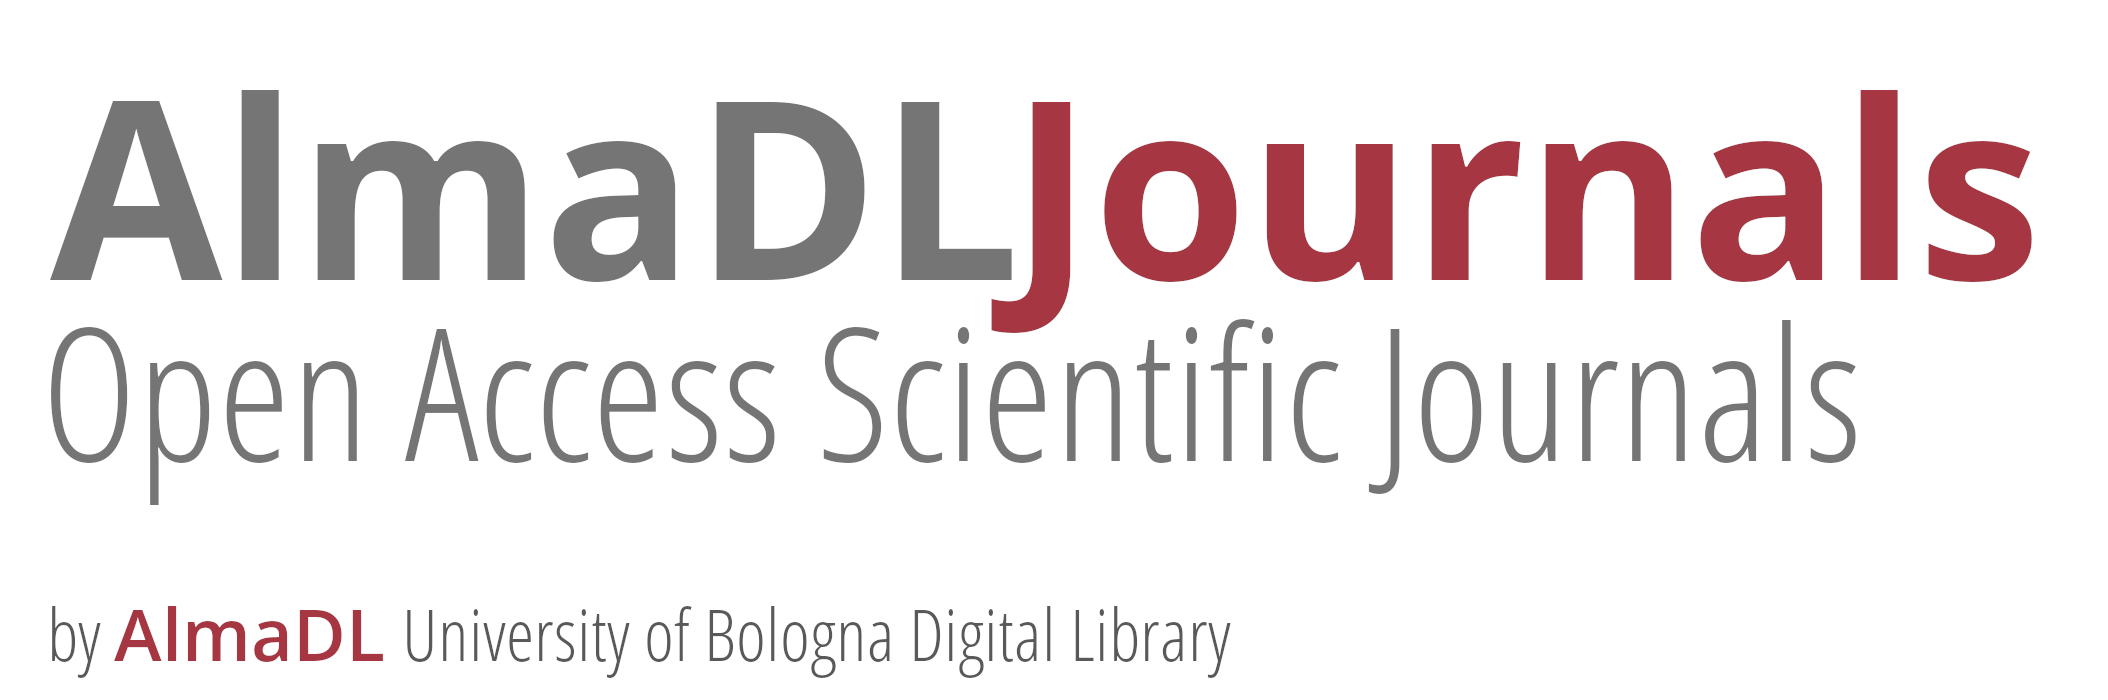 AlmaDL Journals – Open Access Scientific Journals